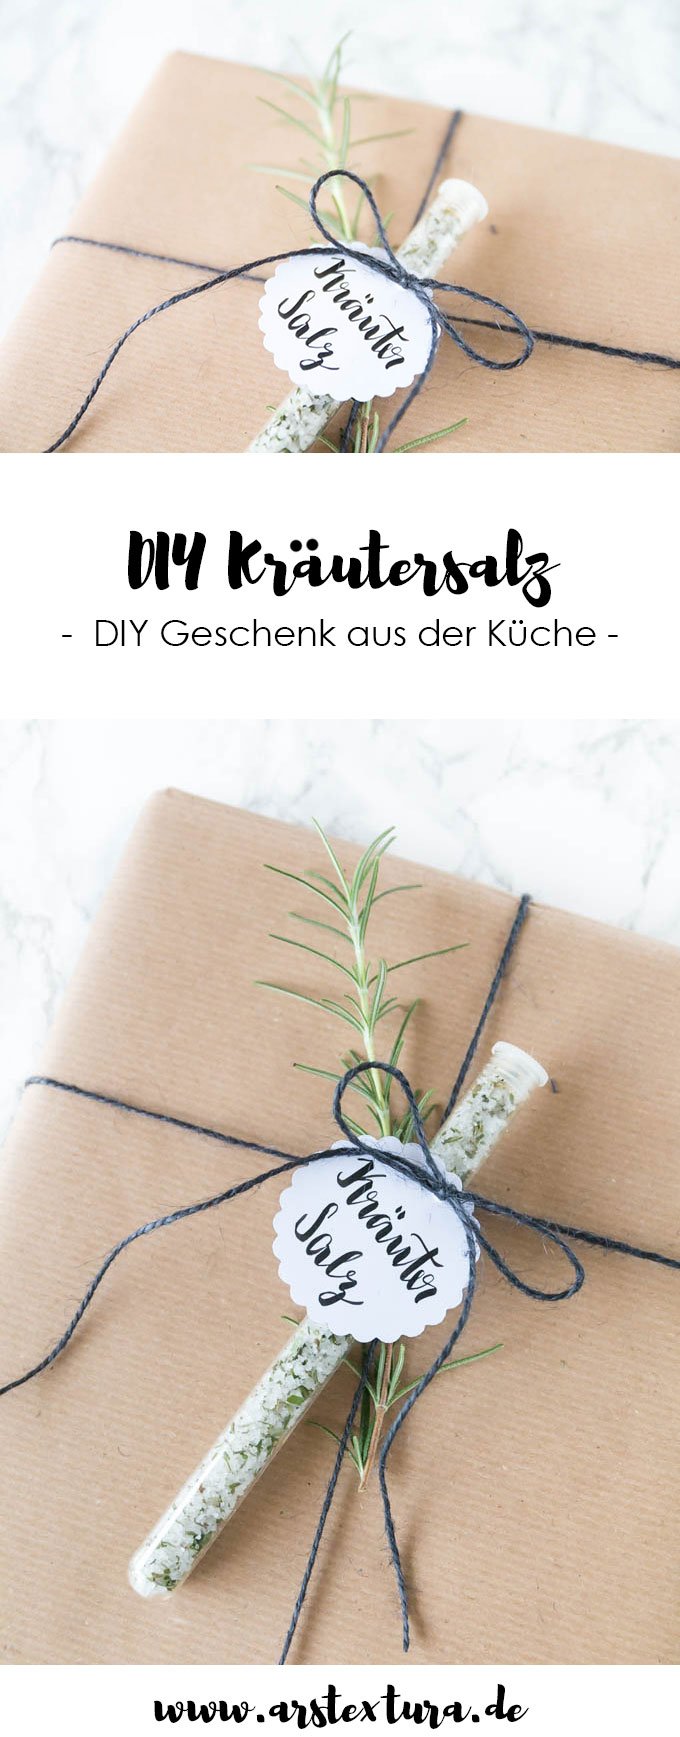 DIY Kräutersalz zum verschenken | DIY Geschenk aus der Küche | ars textura DIY Blog